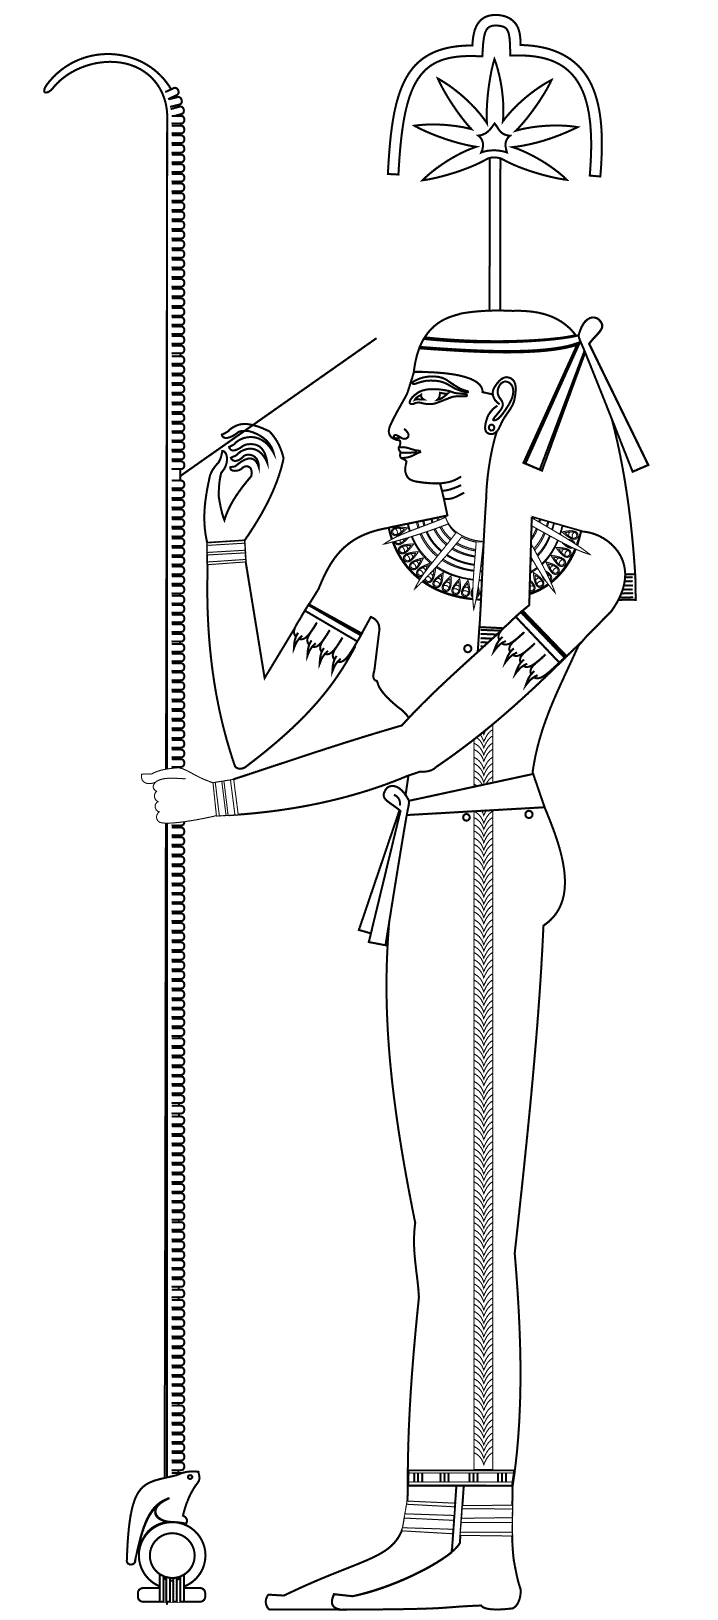 Seshat, diosa de la escritura y la sabiduría